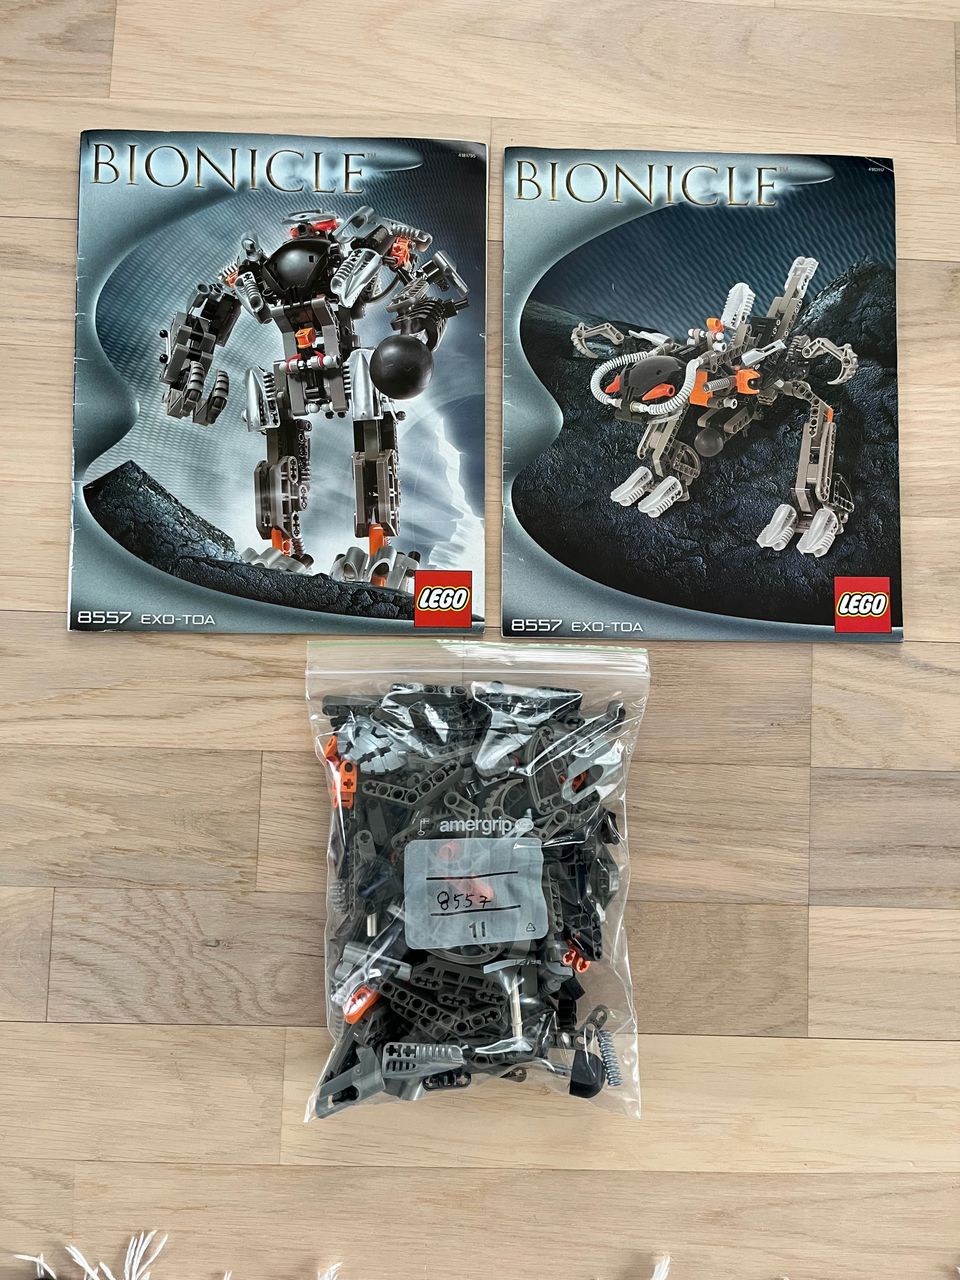 Lego Bionicle 8557: Exo-Toa